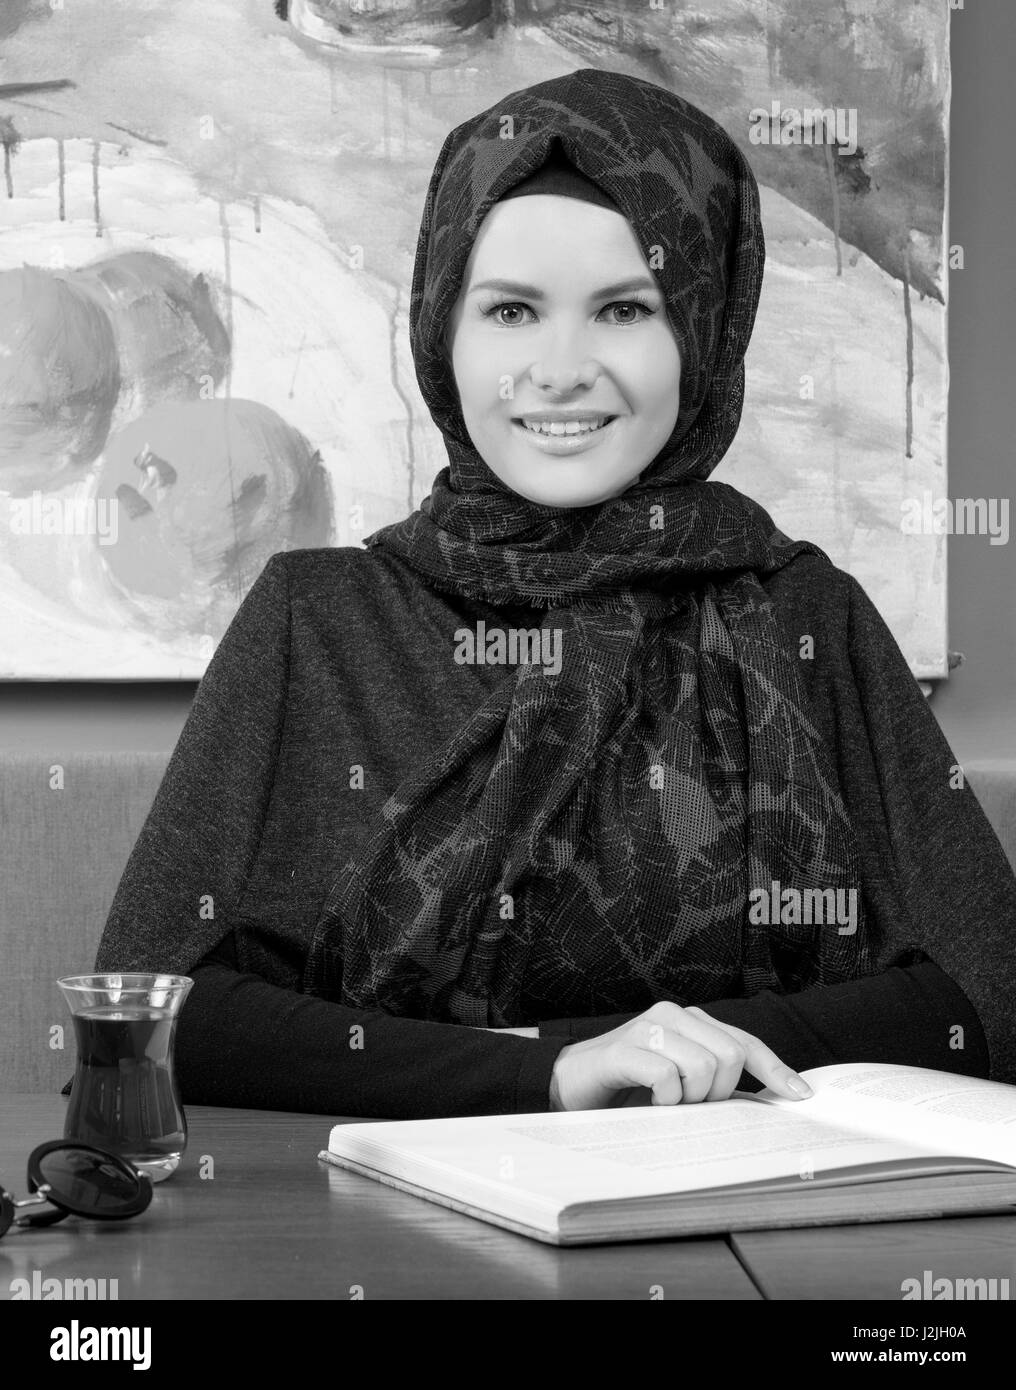 Foulard hijab Banque d'images noir et blanc - Alamy